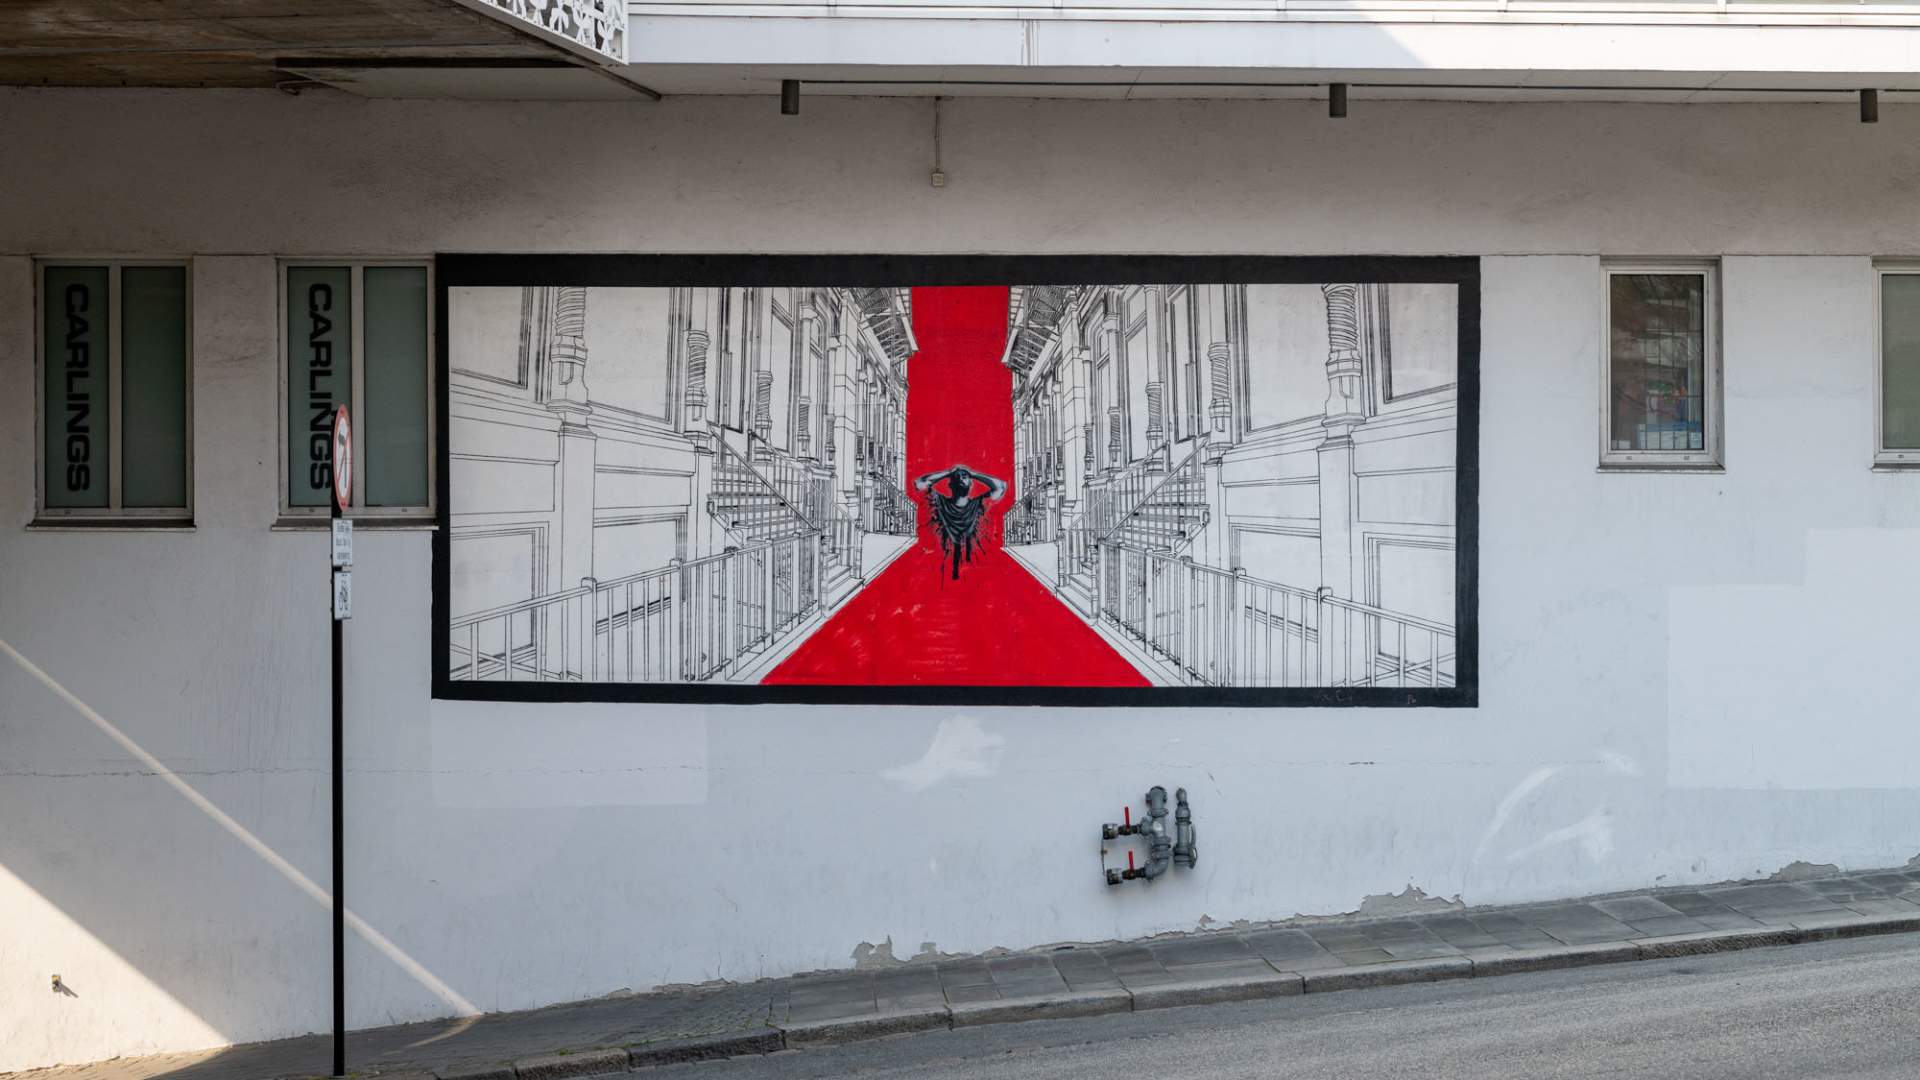 Stavanger Street art: "Untitled" von Logan Hicks